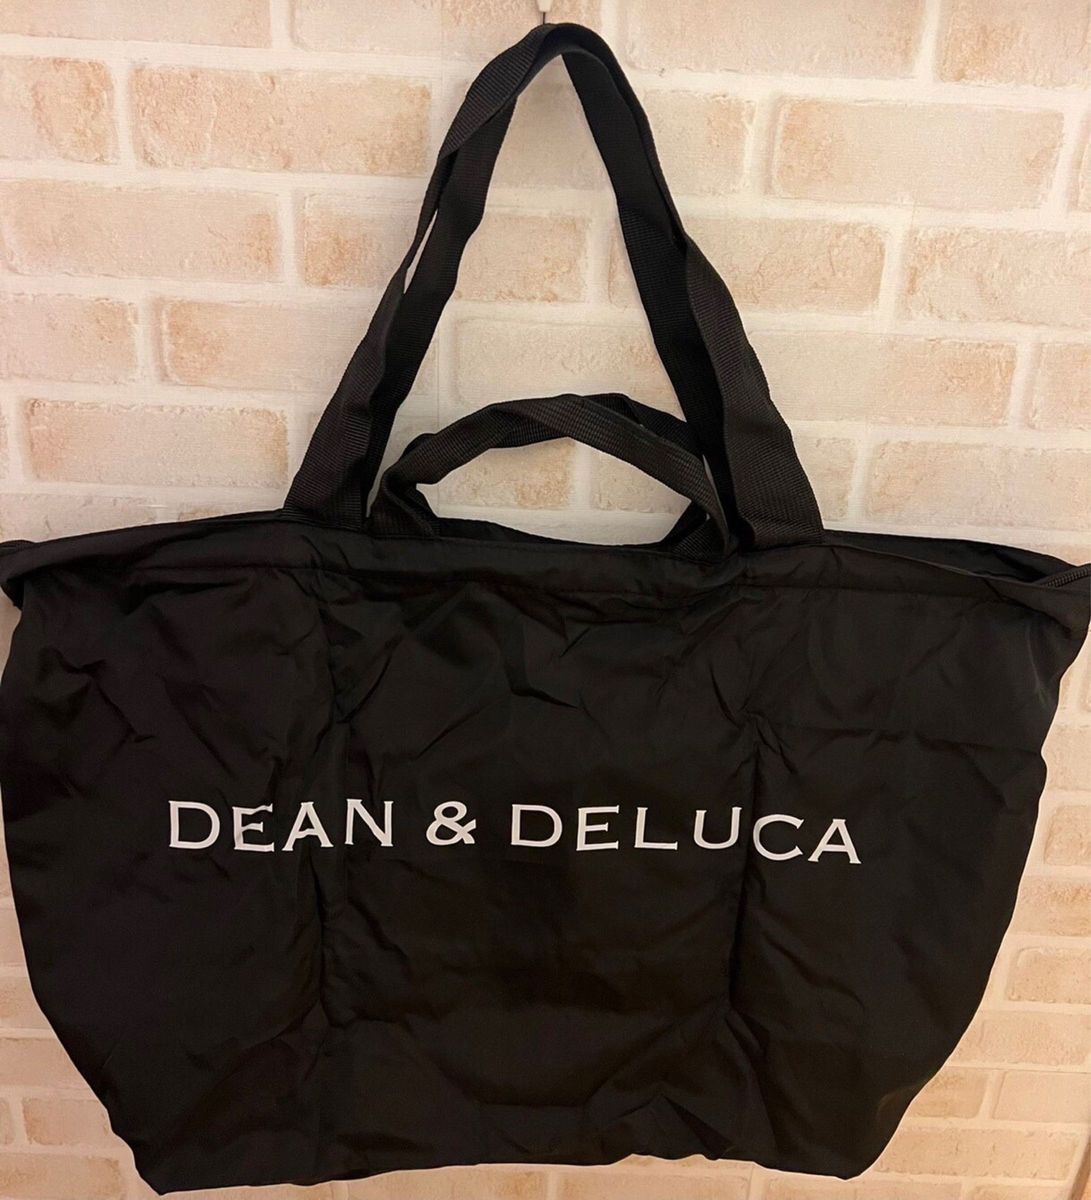 【本日限定SALE】DEAN & DELUCA パッカブルトートバッグ エコバッグ 黒 買い物バッグ 